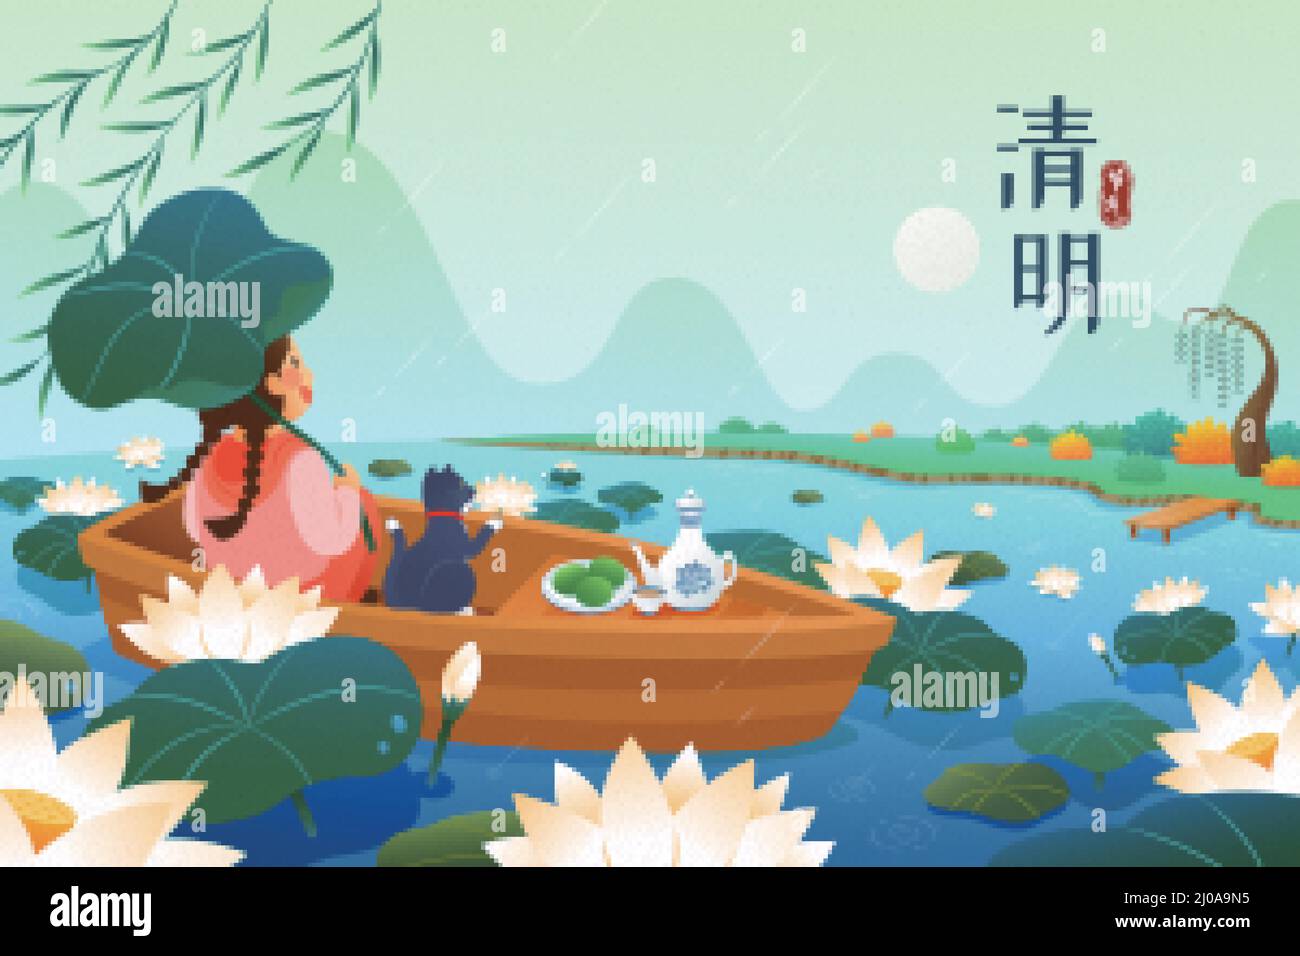 Banner Qing Ming Festival. Ragazza asiatica su una barca che guarda il paesaggio da solo sotto la pioggia su un laghetto di loto. Traduzione: Festival di Qing Ming Illustrazione Vettoriale